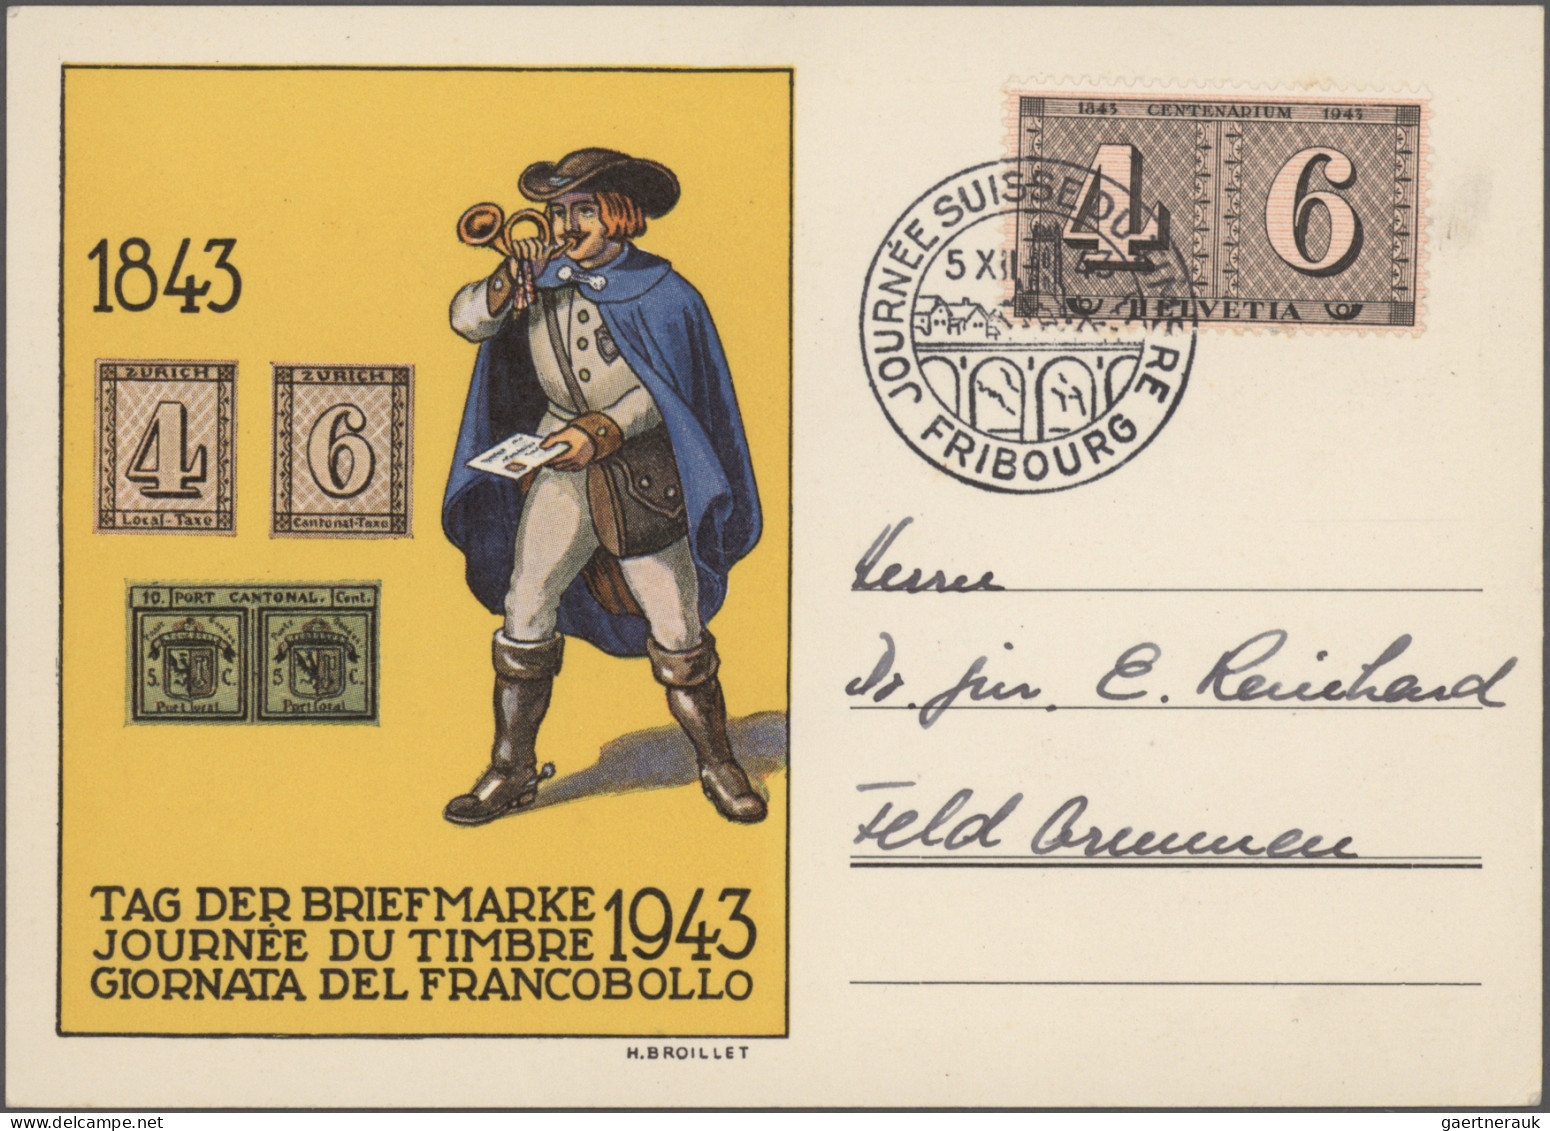 Schweiz: 1860/1960er Jahre: Über 100 Briefe, Postkarten und Ganzsachen unterschi